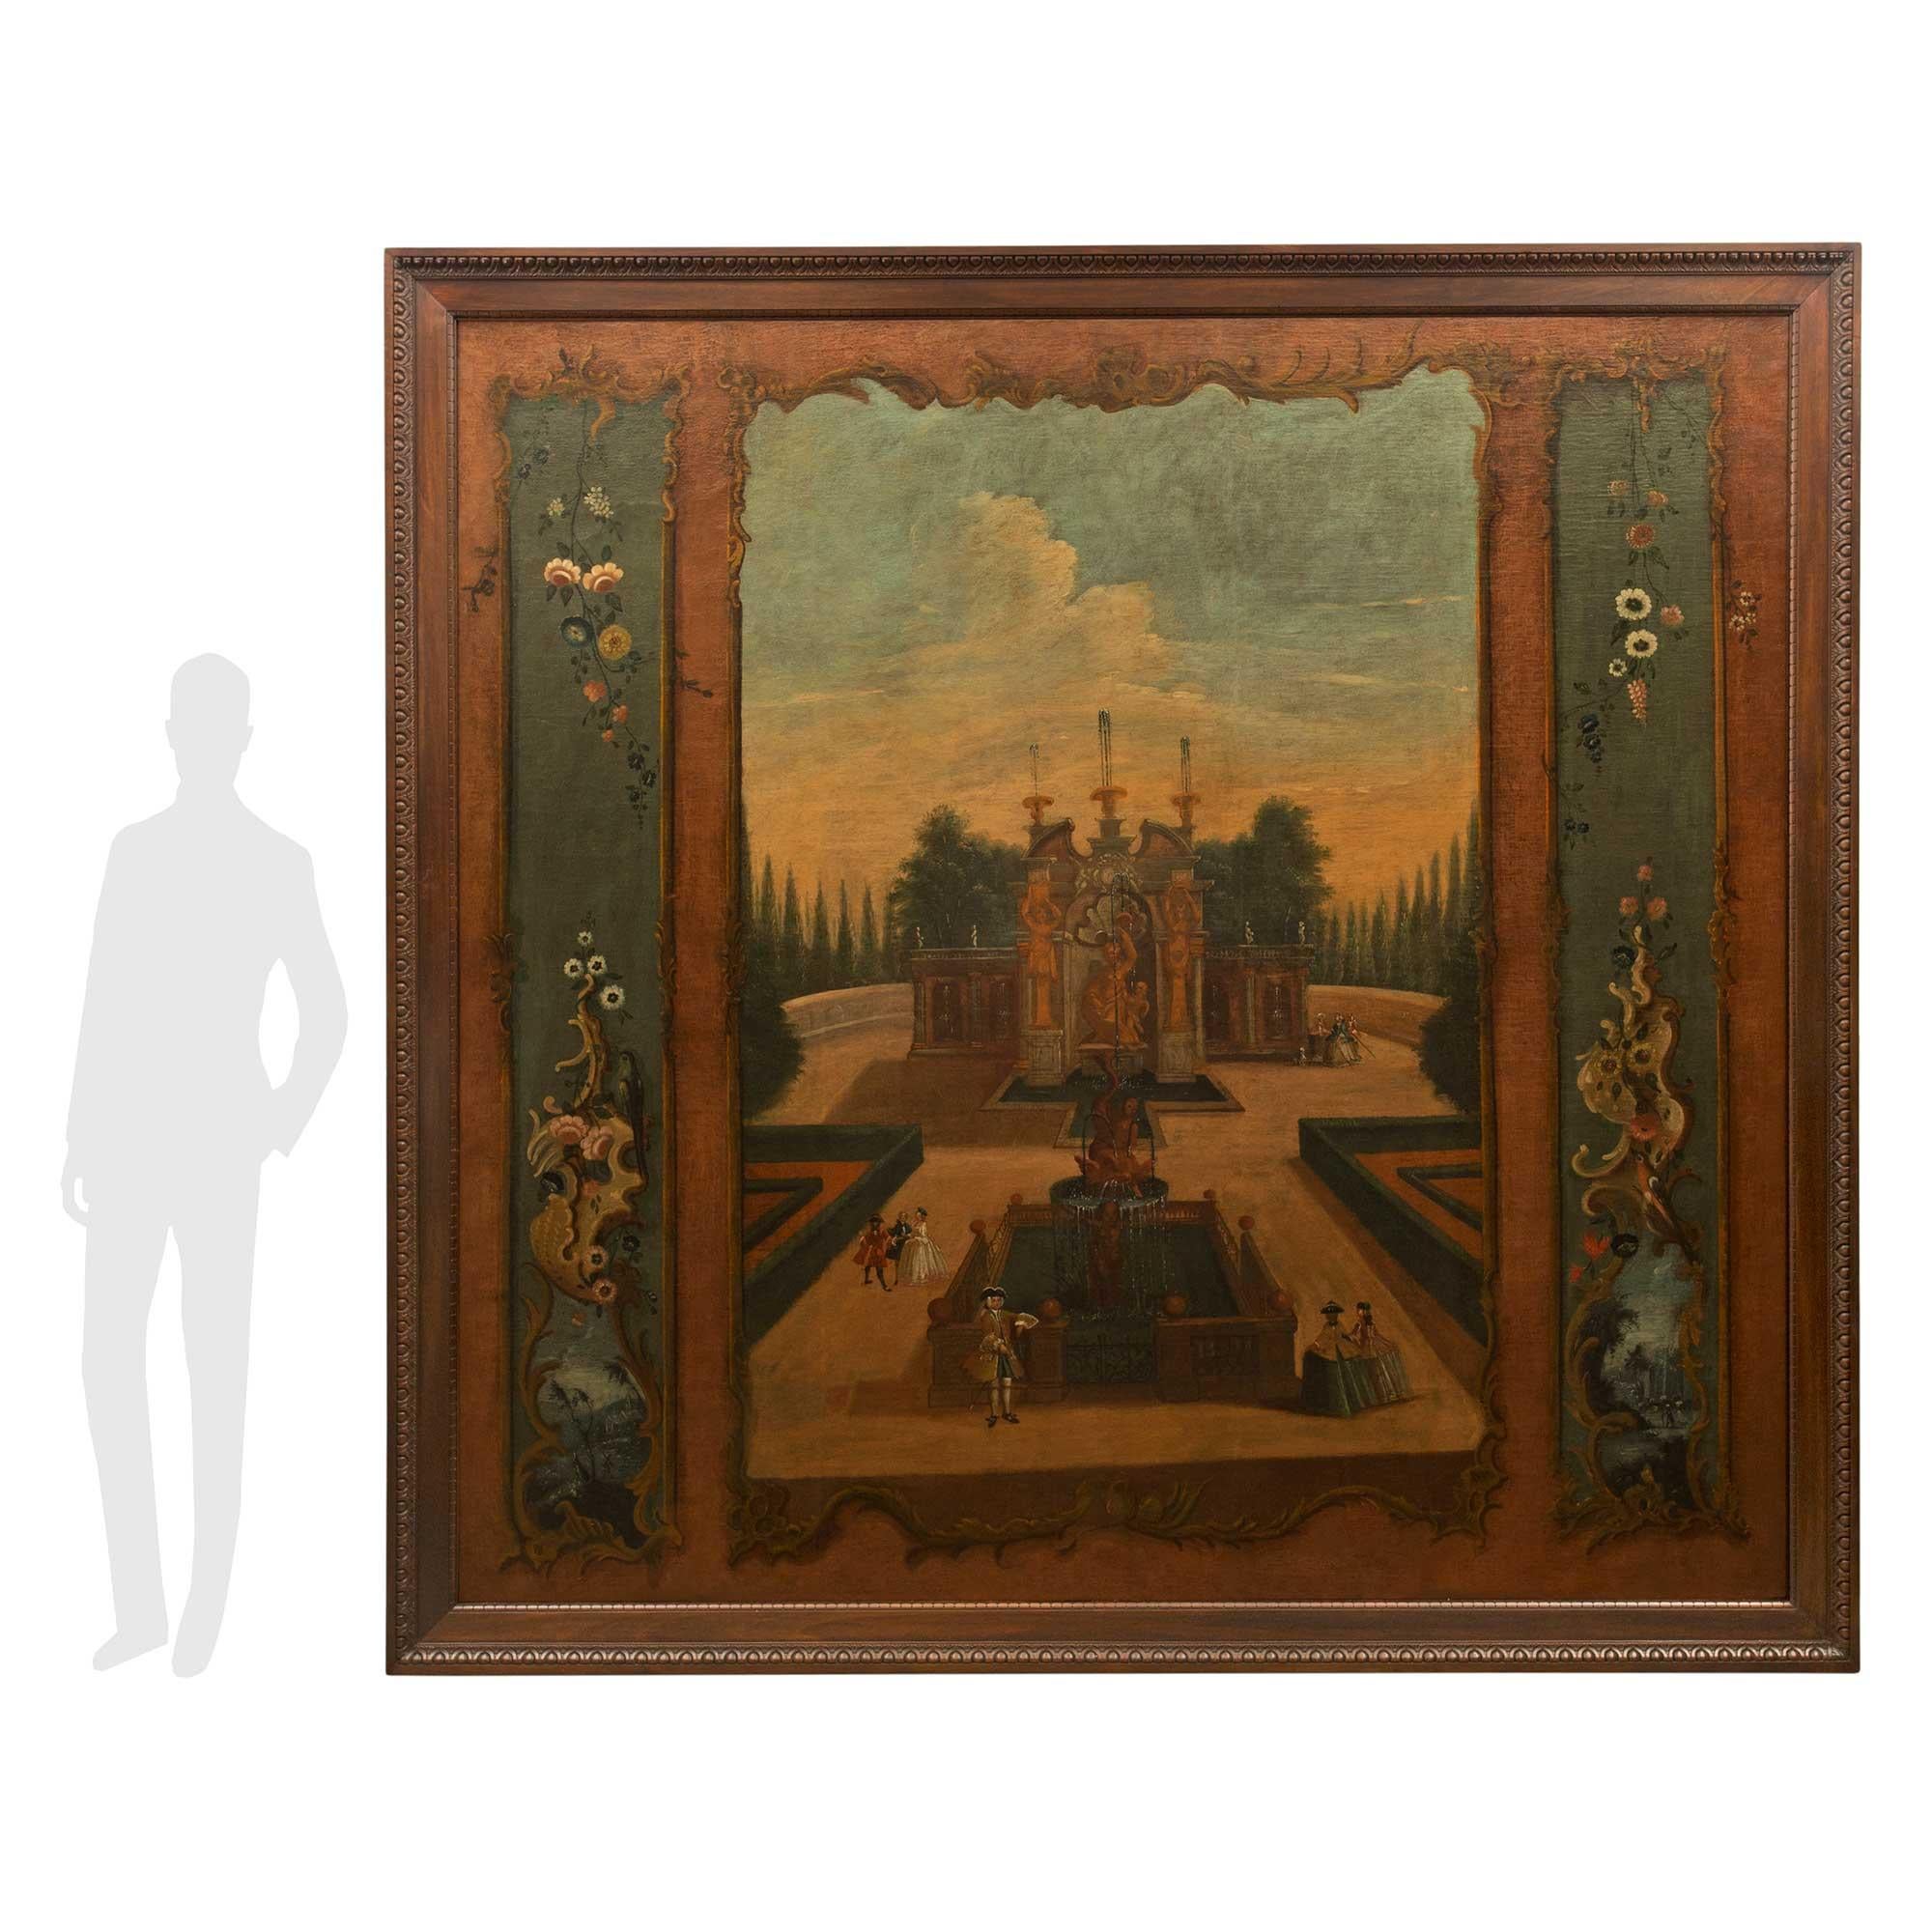 Une impressionnante peinture à l'huile sur toile continentale du 18e siècle à grande échelle. Le tableau est encadré dans un beau cadre en noyer avec un motif sculpté enveloppant Les Oves. La peinture dépeint une belle et très charmante scène de